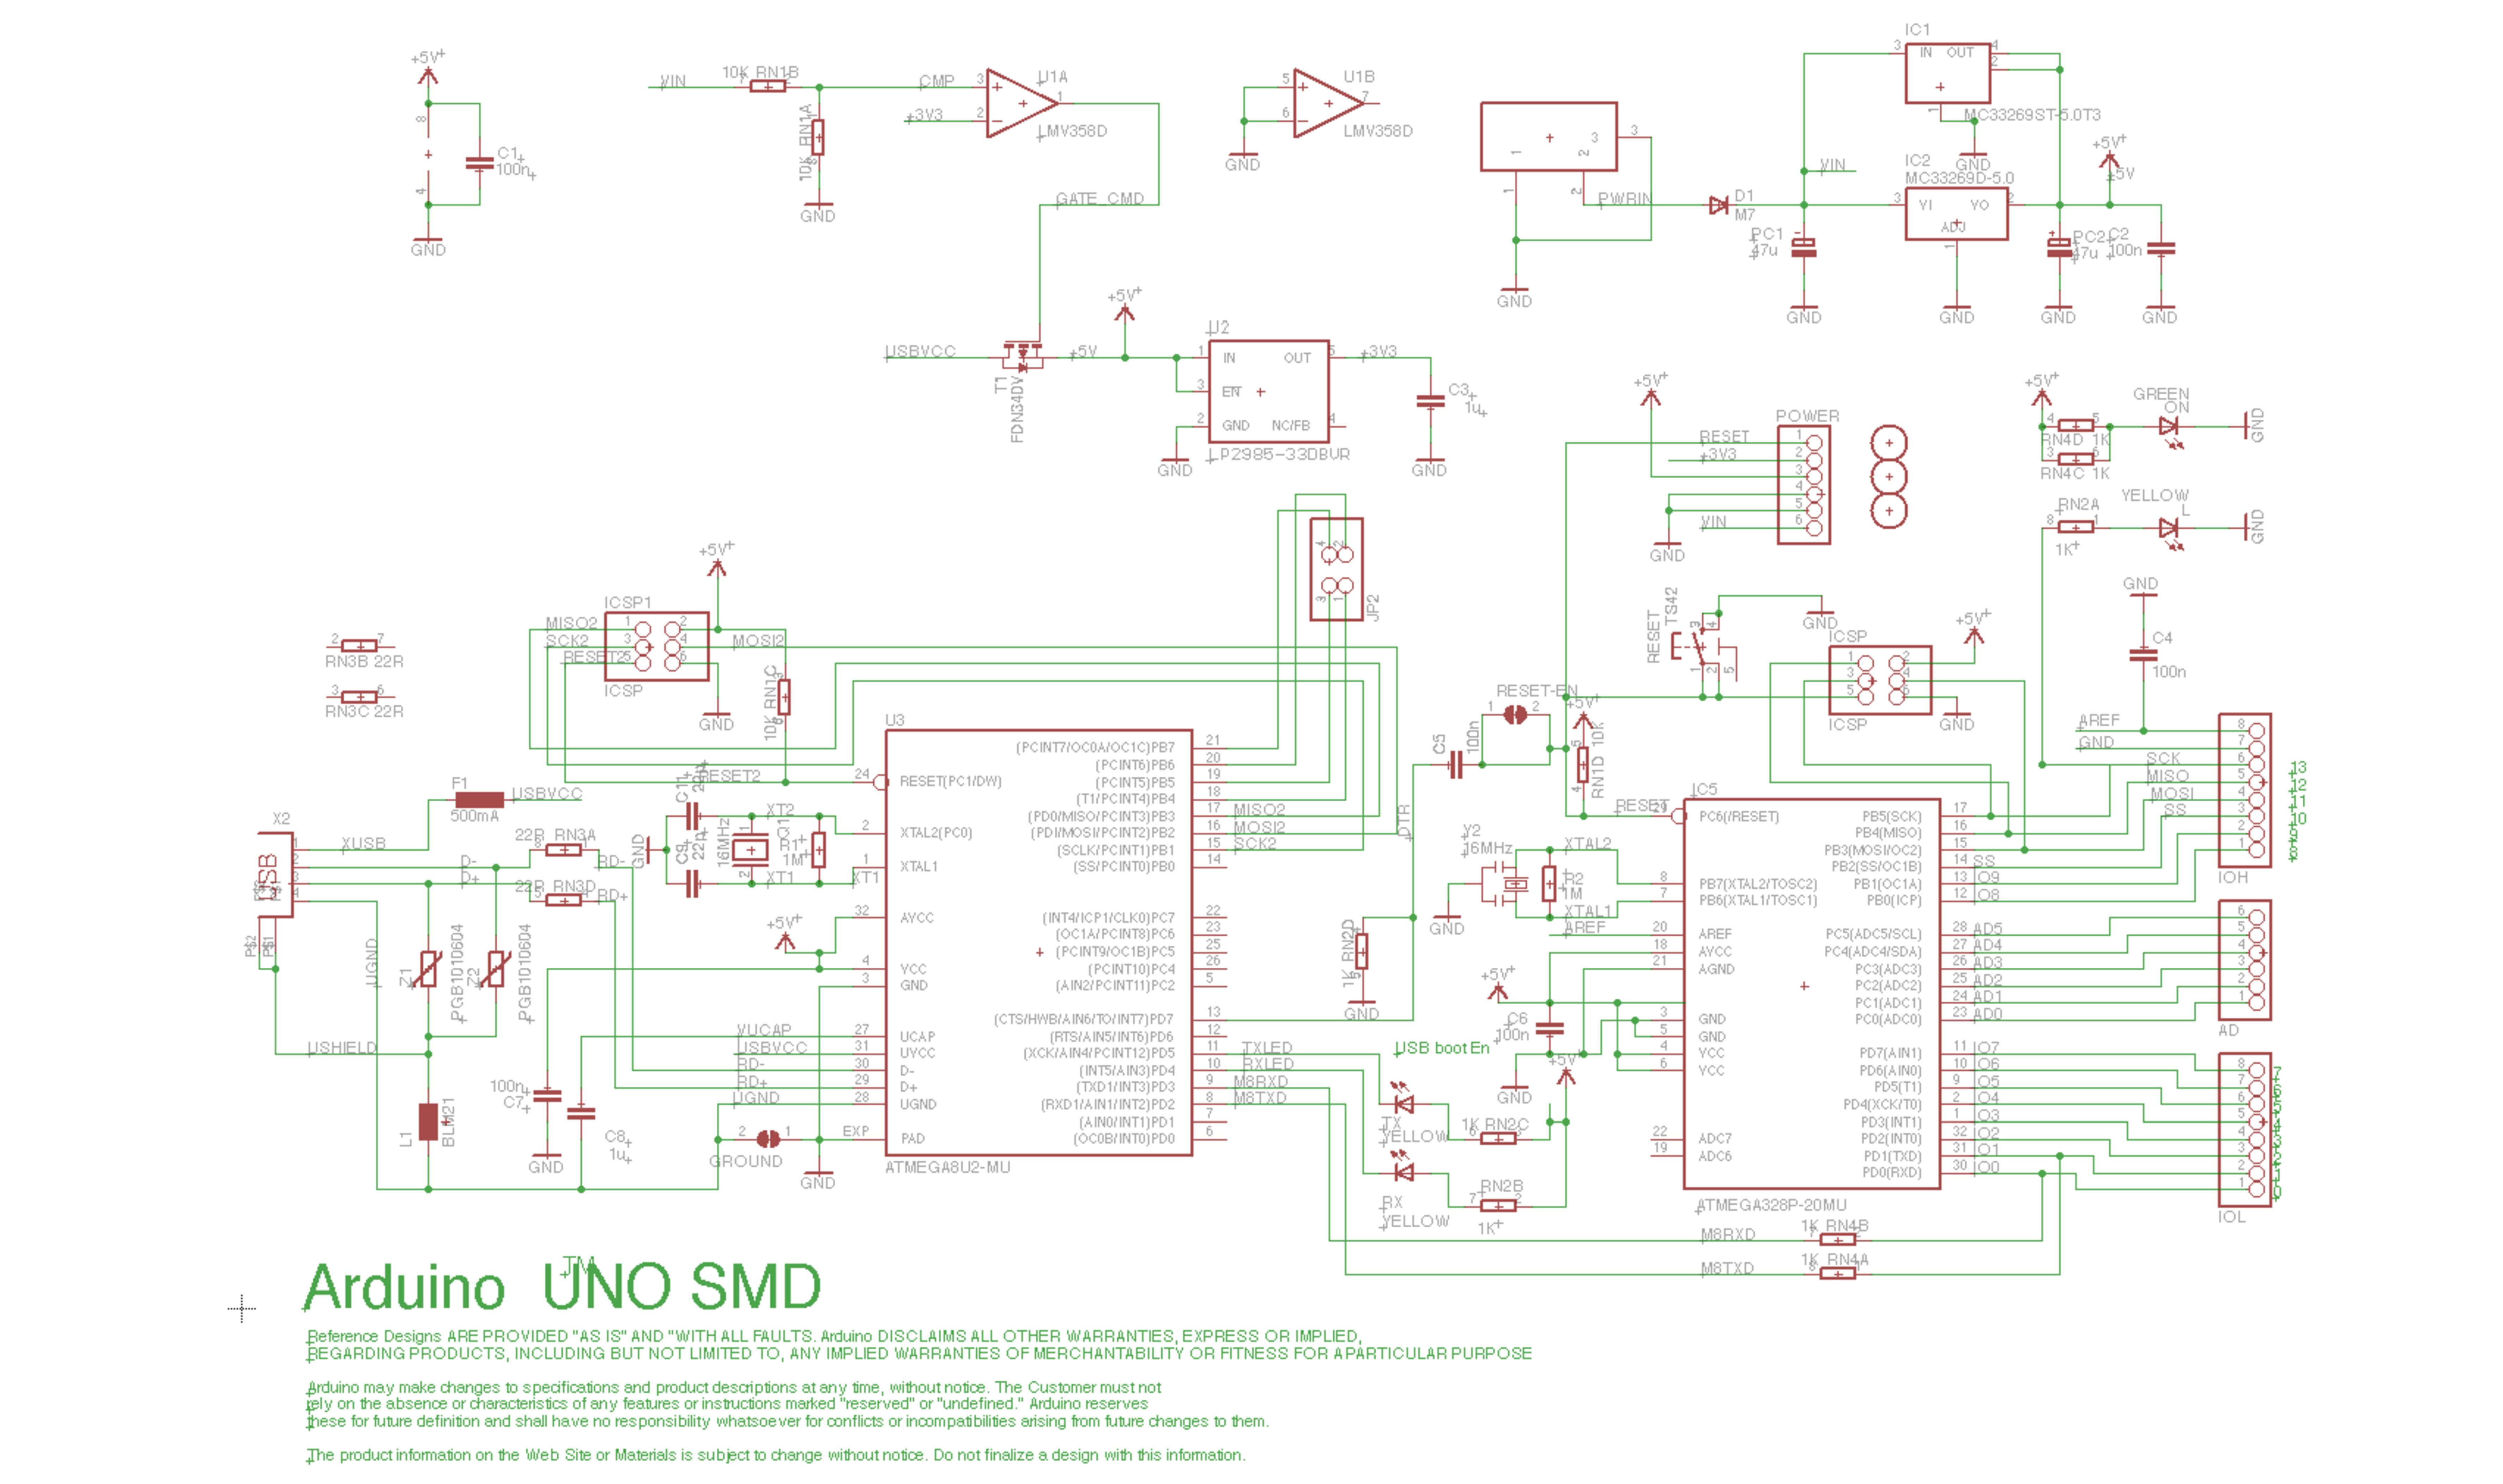 Arduino UNO SMD Edition Schematic - Source: Arduino.cc